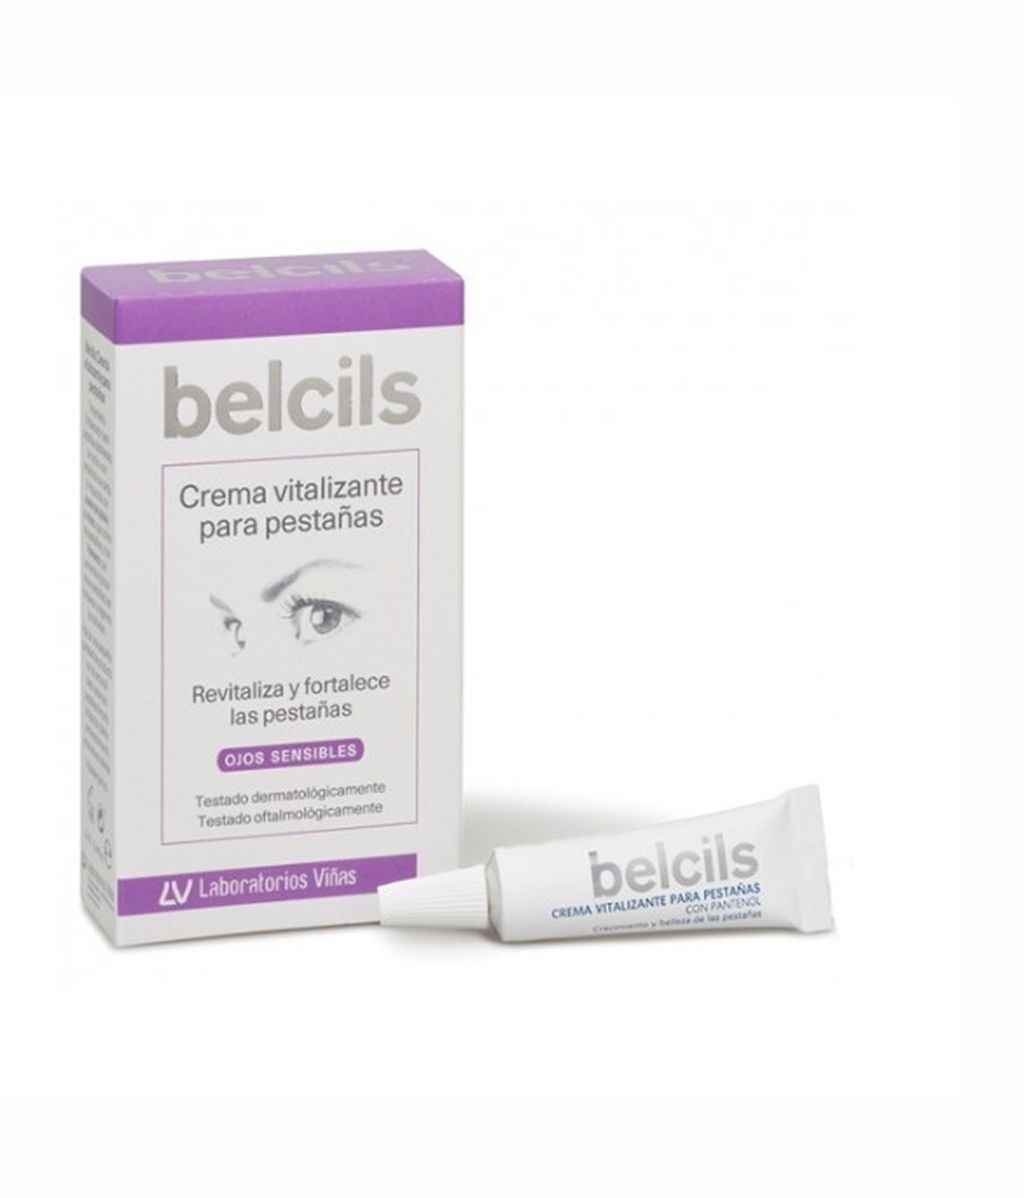 belcils-crema-vitalizante-para-pestanas-4ml_fv30 (1)